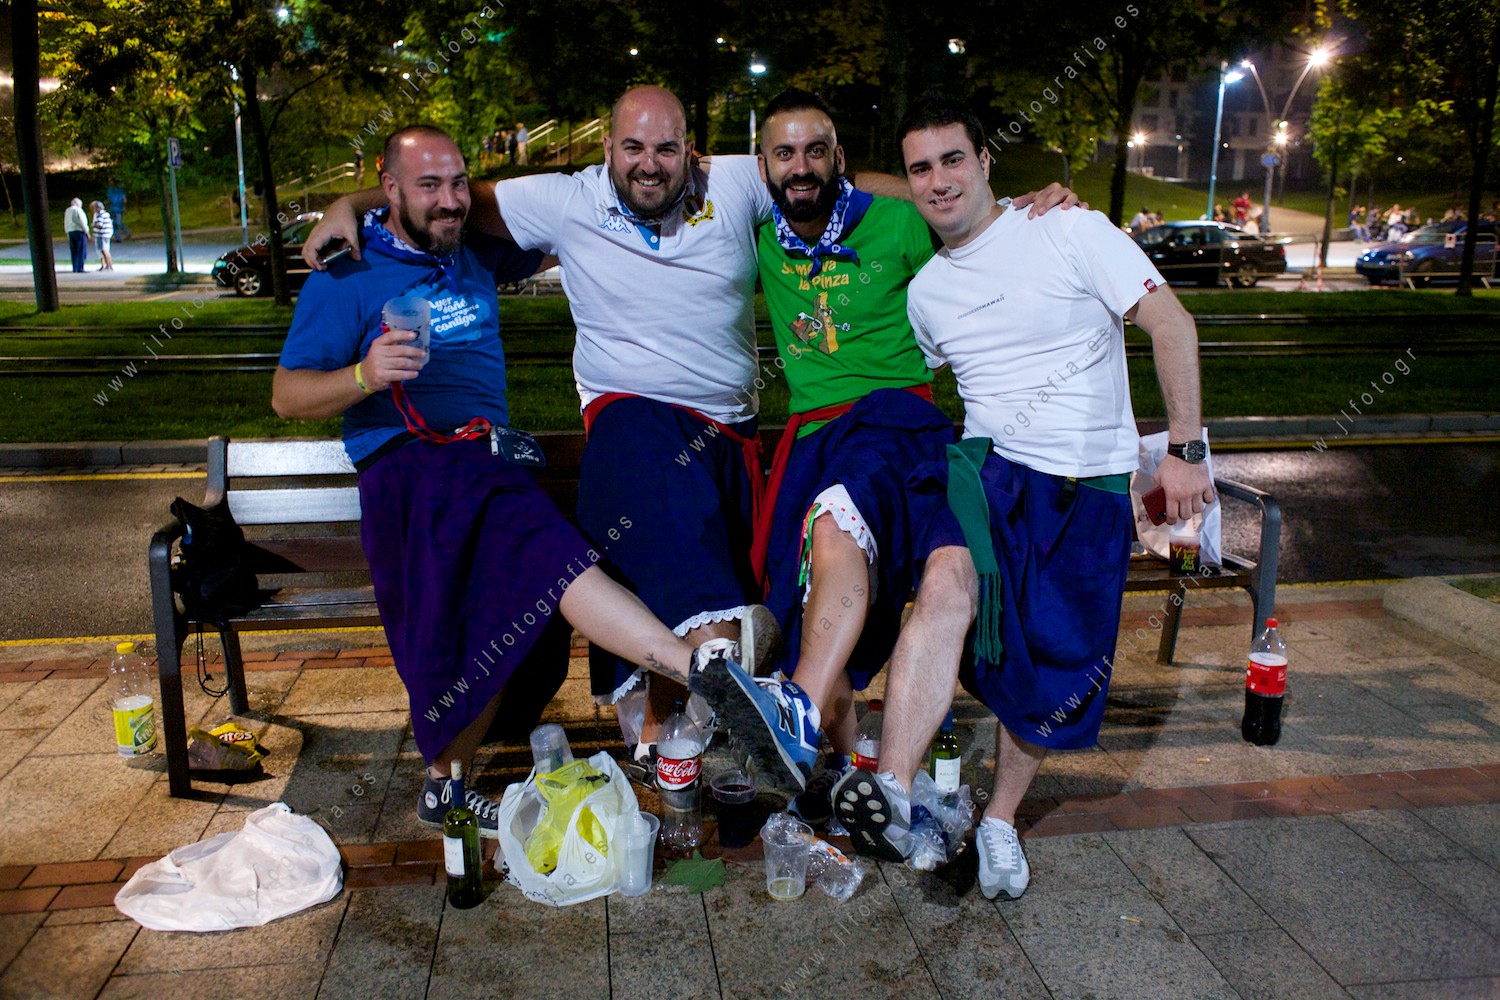 Grupo de arrantzales con falda y a lo loco en fiestas de Bilbao dándolo todo, diversión y buen humor